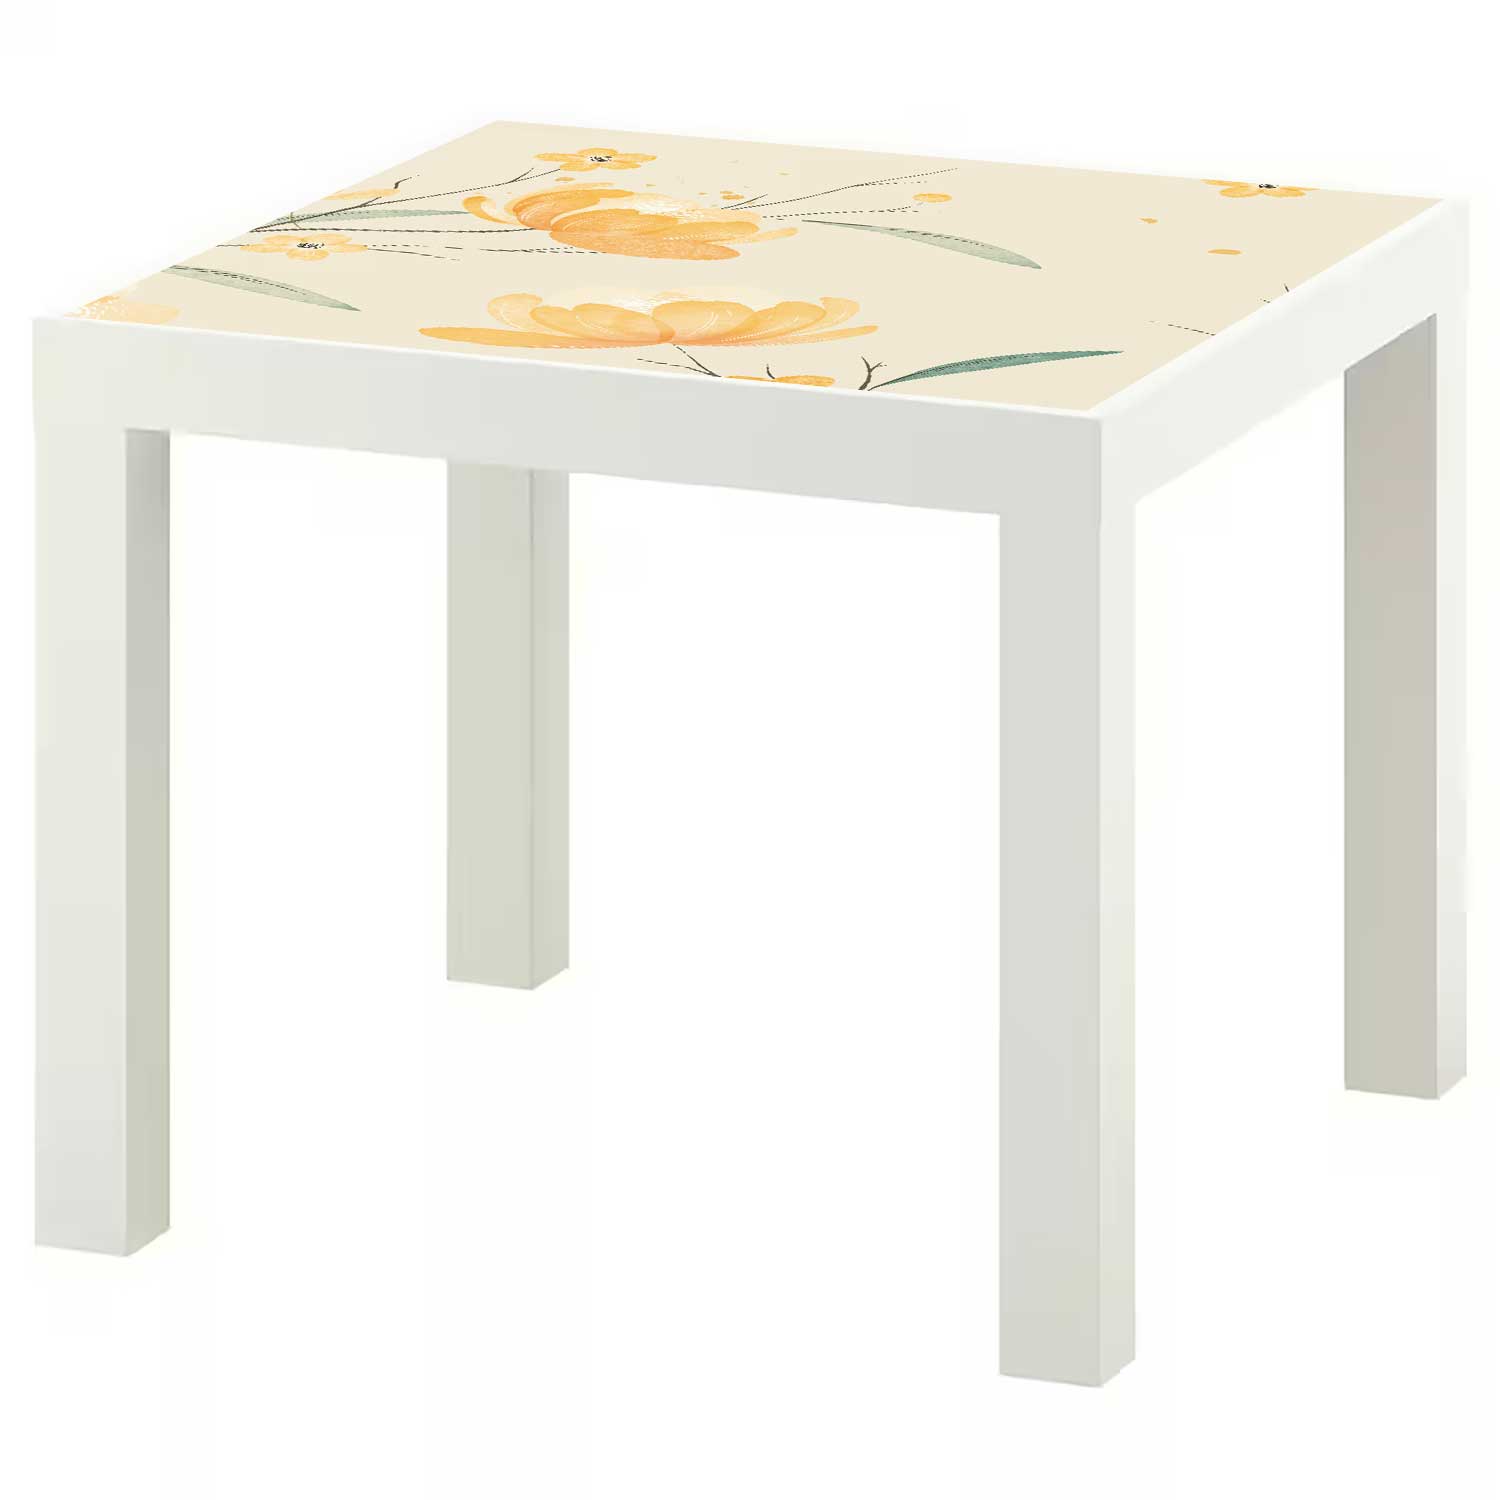 Möbelfolie für IKEA Lack Tisch 55x55 cm 'Blütenzeit'